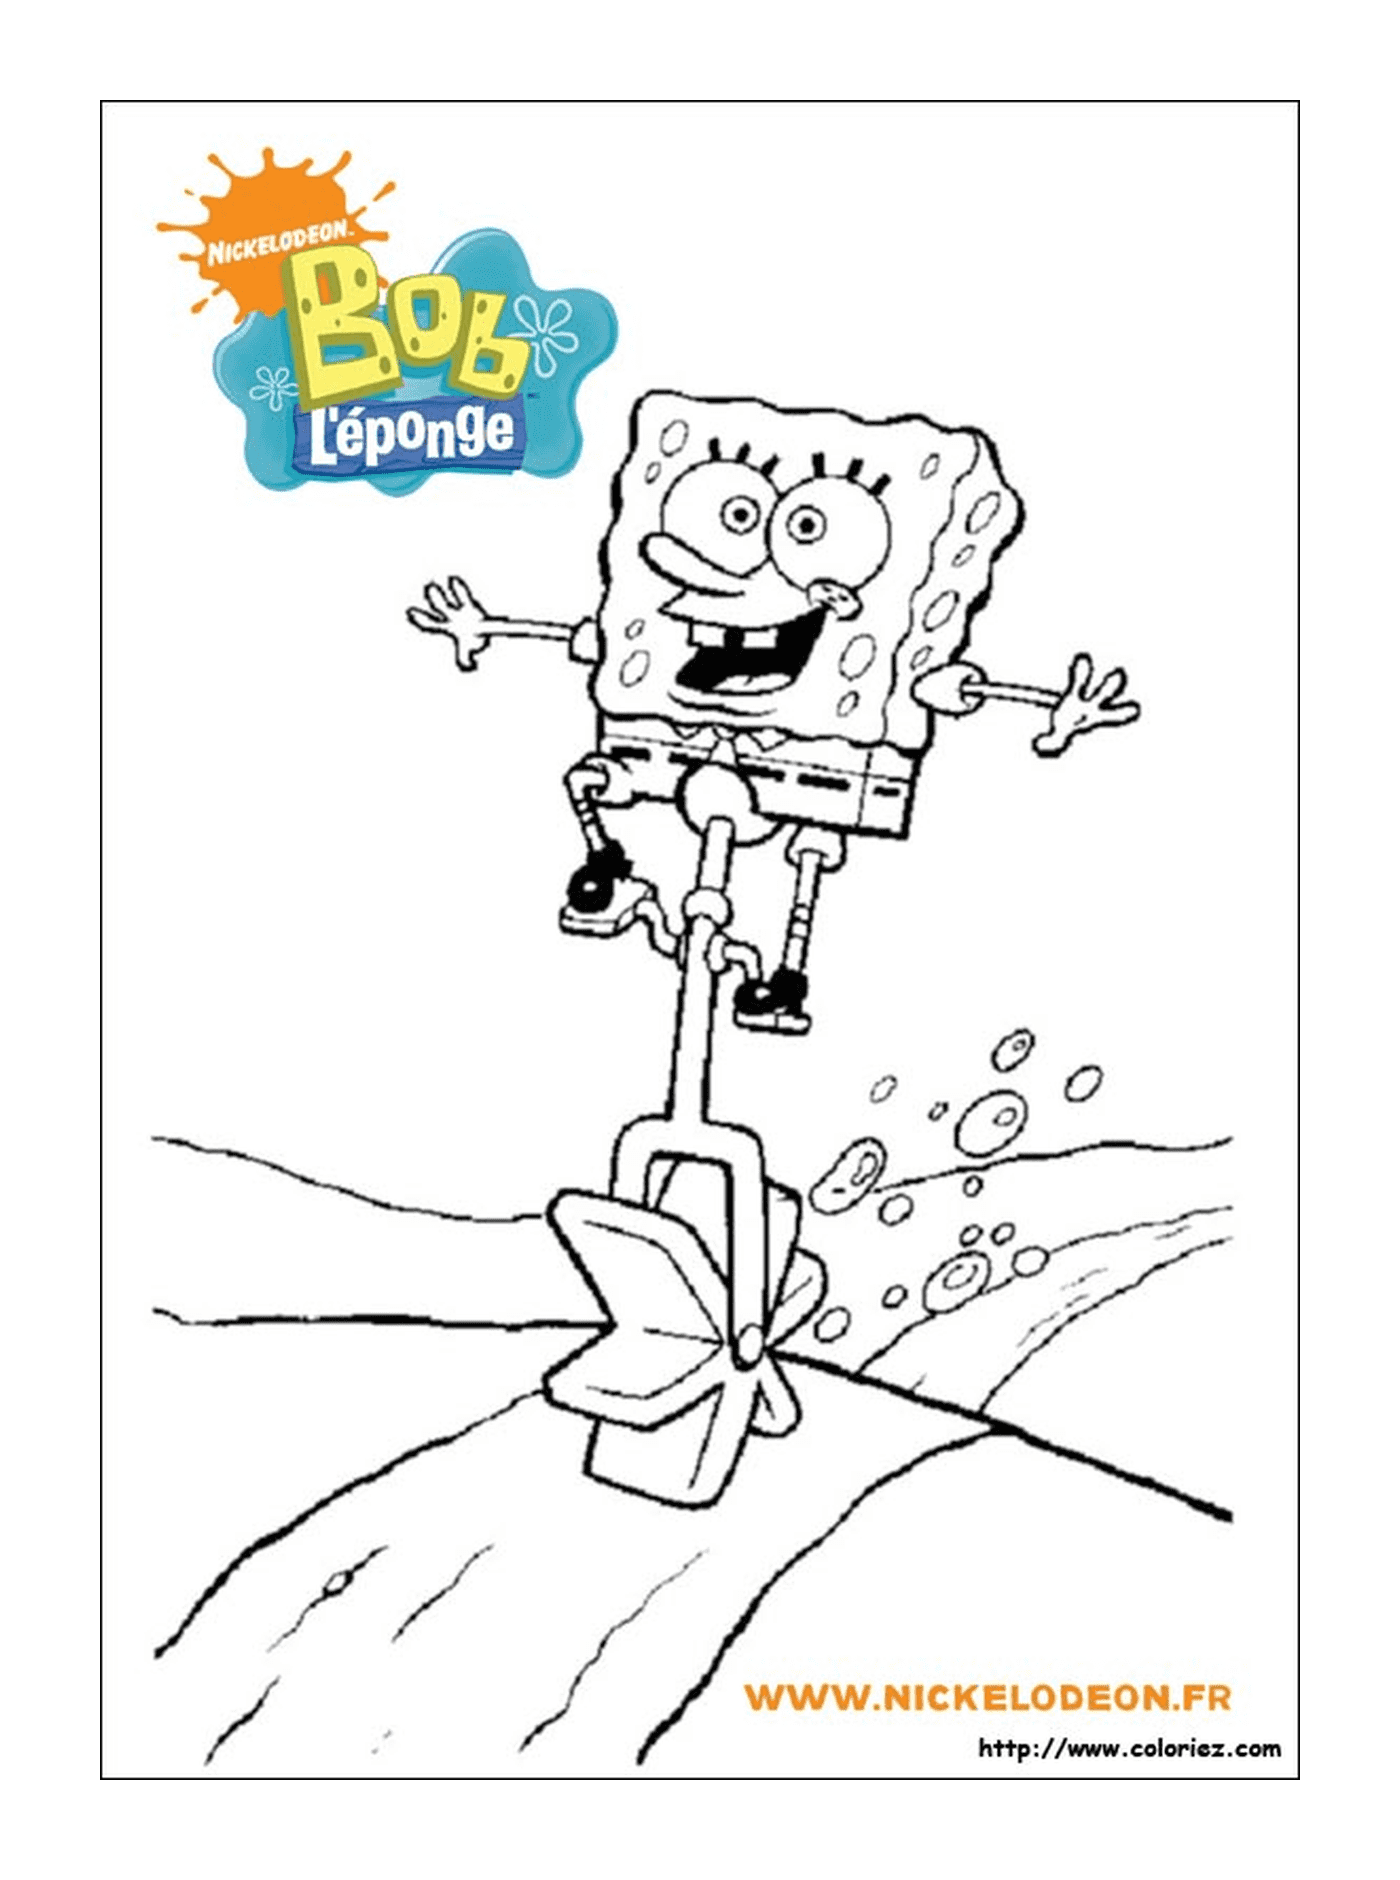   Bob l'éponge sautant par-dessus une poubelle 